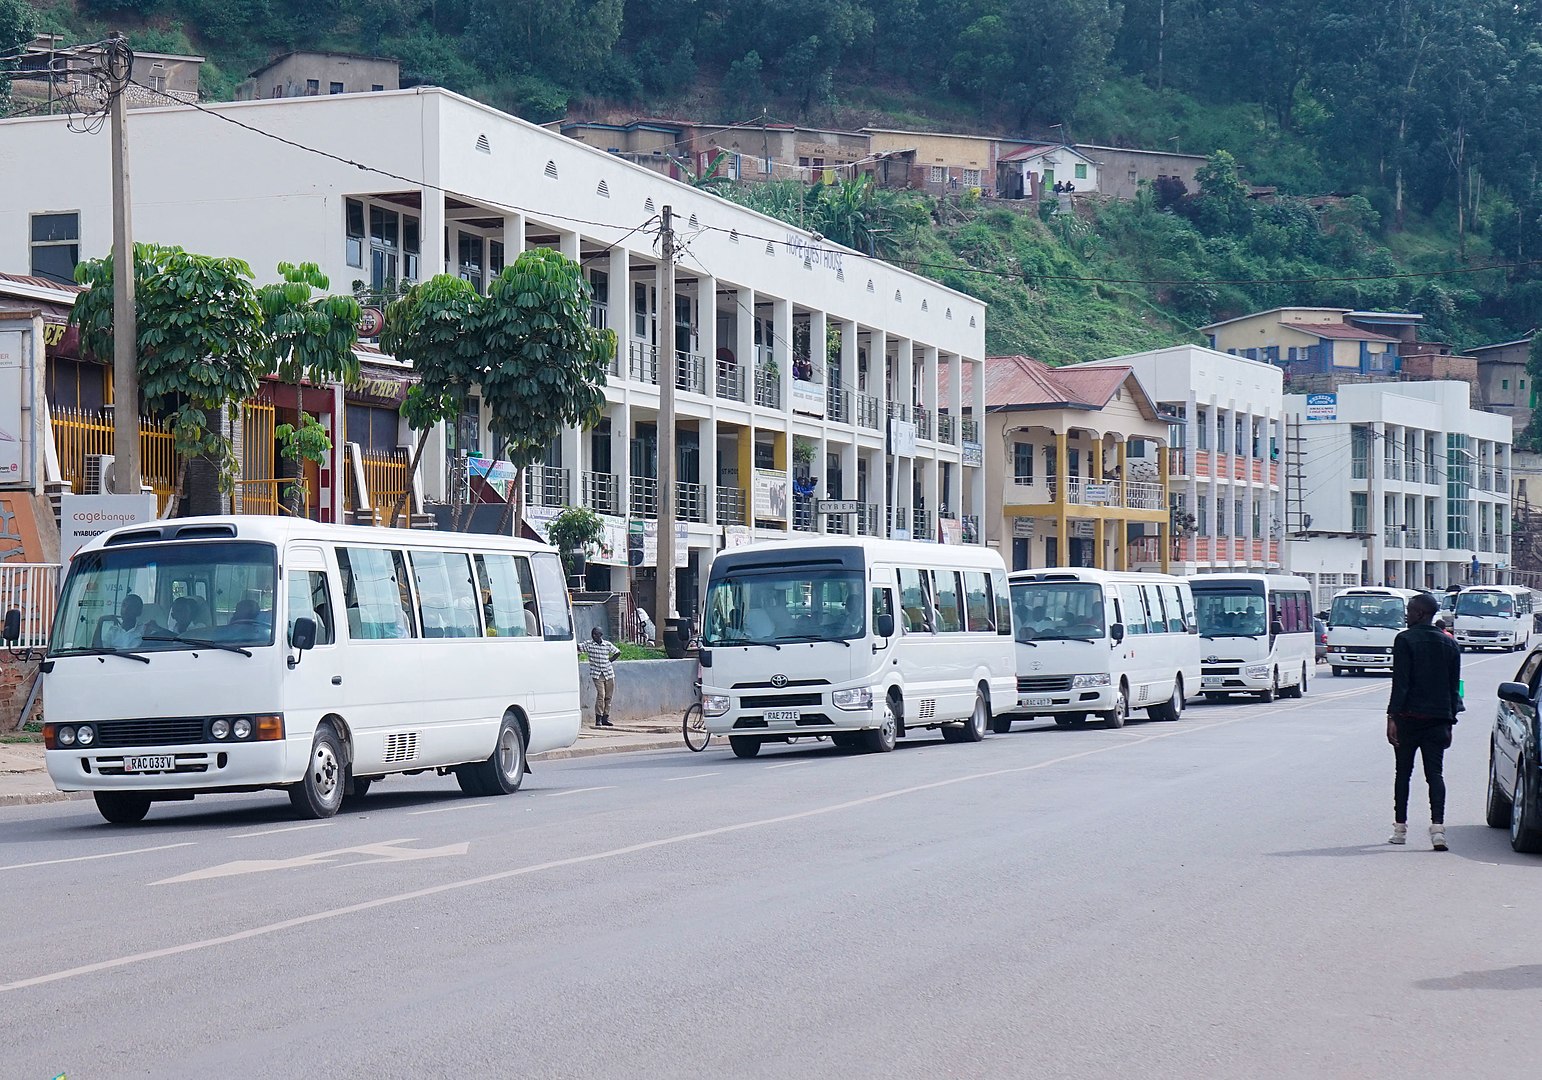 200506 -Rapatriement internes écoles secondaires Kigali 16 mars 2020 by Happyartst CC BY-SA 4.0 - La Déviation